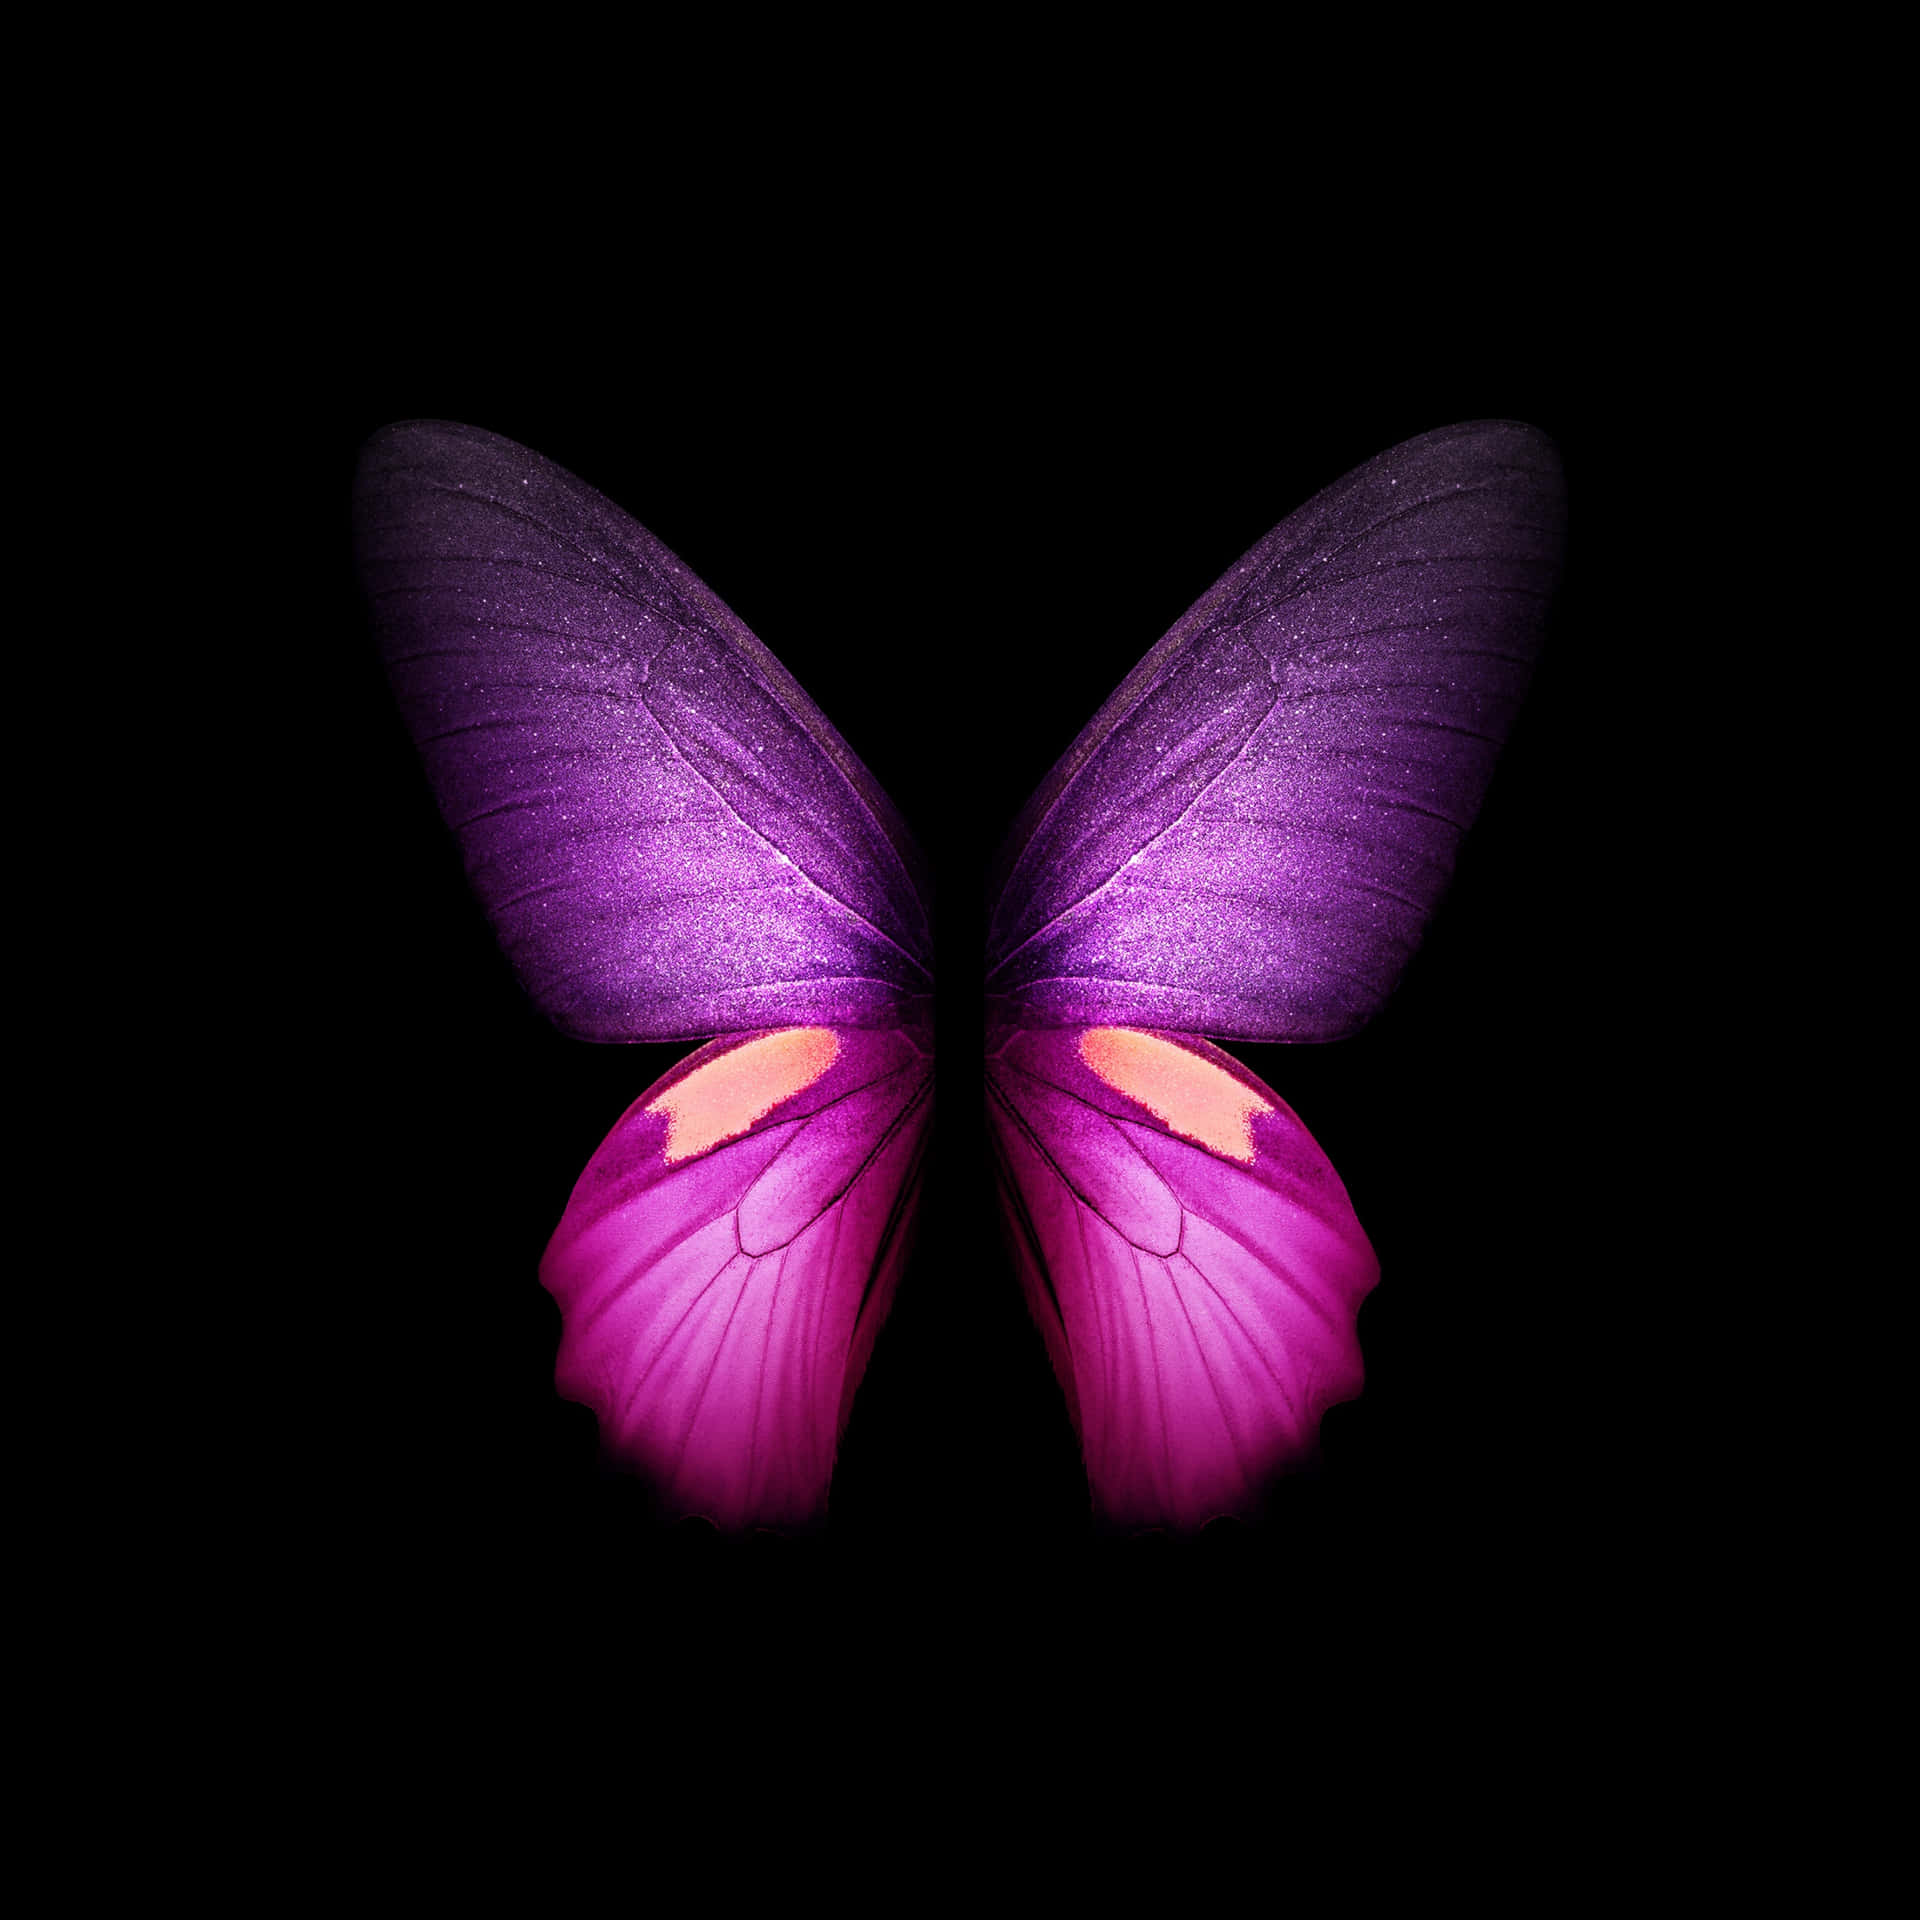 Einschöner Lila Schmetterling Ziert Diesen Iphone-bildschirm. Wallpaper